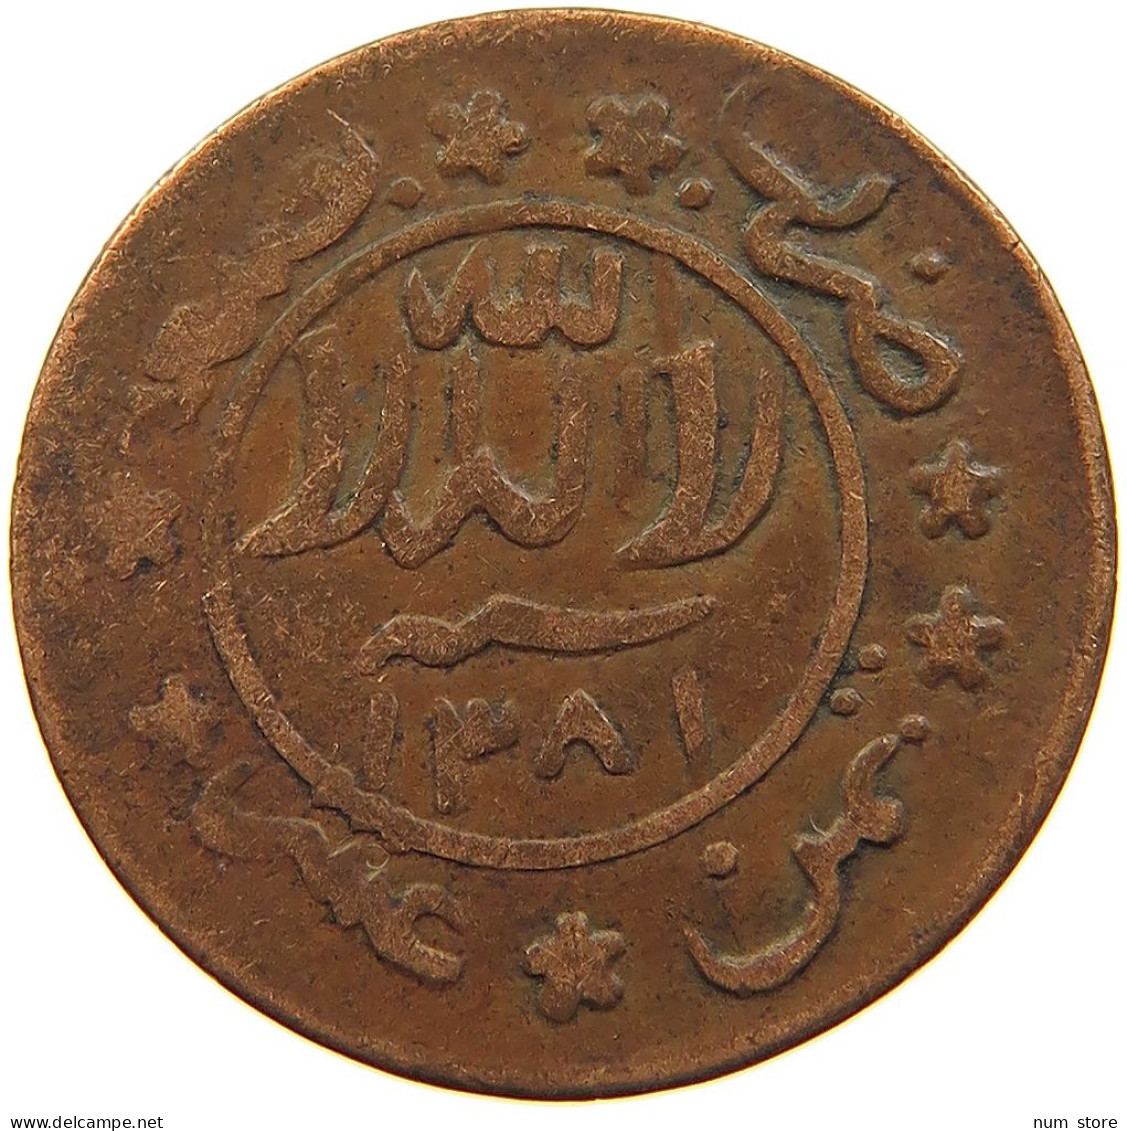 YEMEN 1/80 RIYAL 1381 Ahmad Bin Yahya (1948-1962) #s103 0025 - Yemen